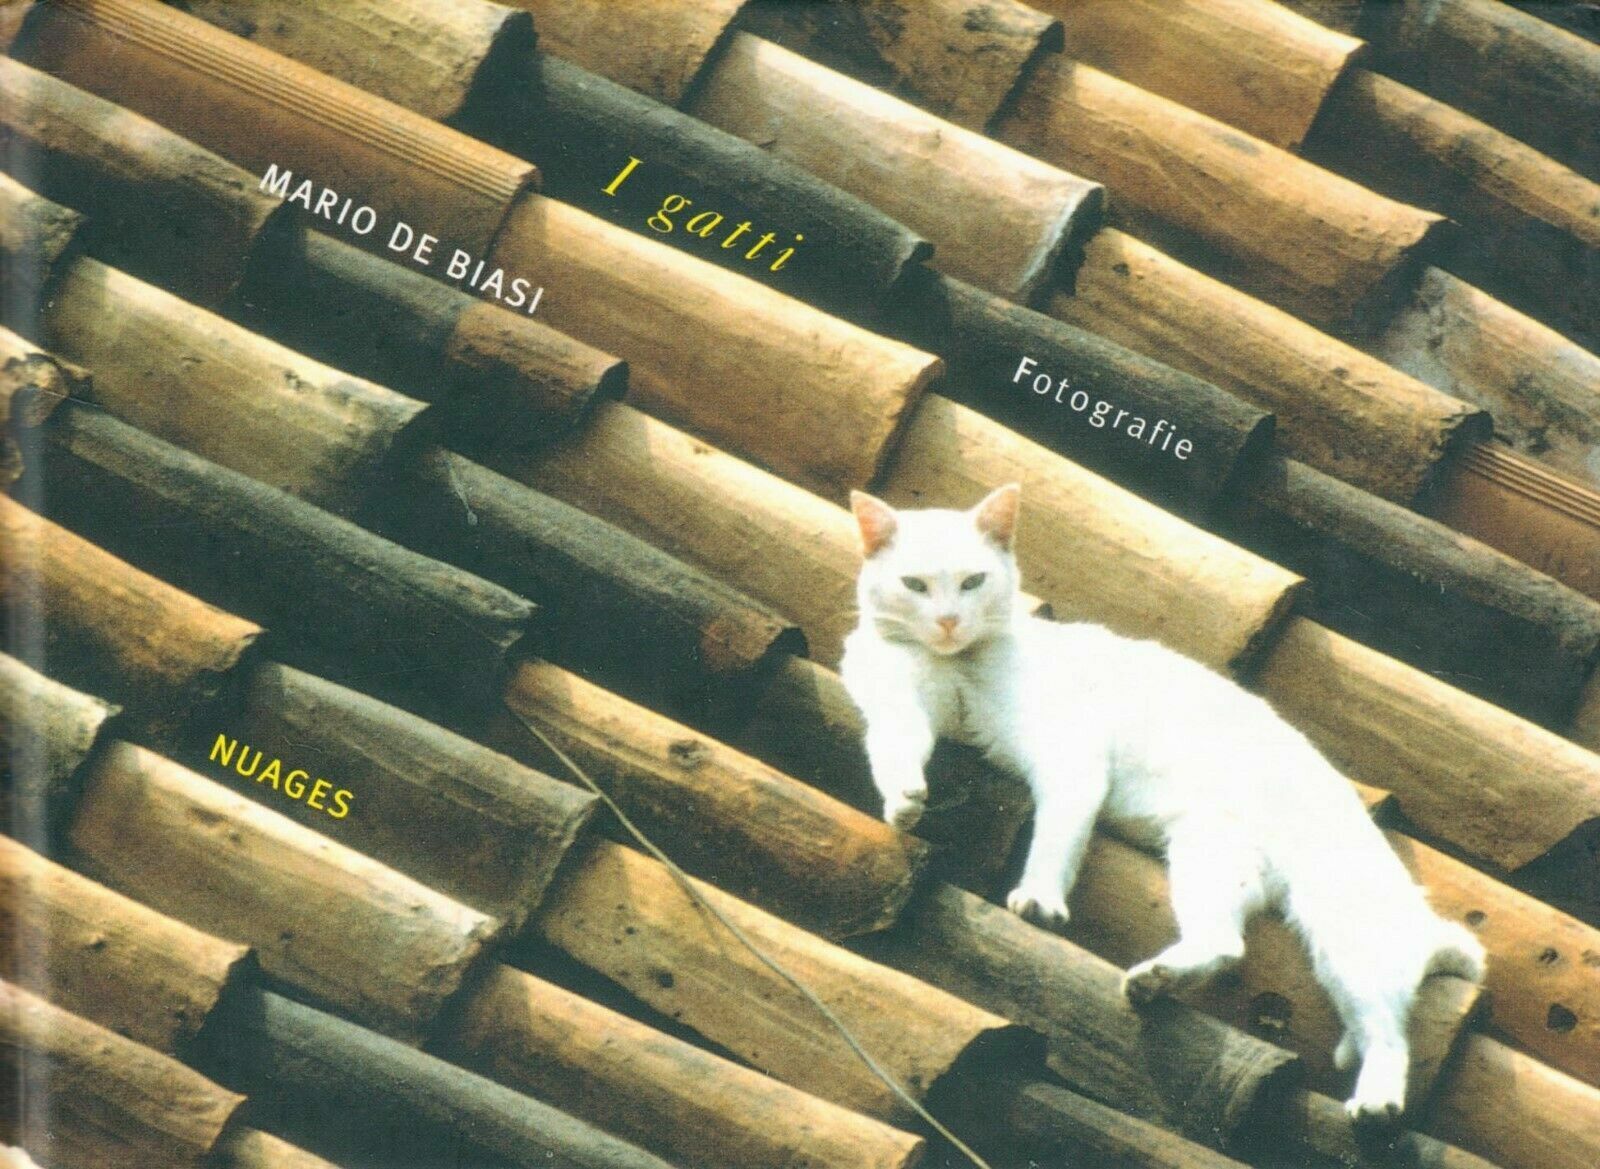 I gatti, fotografie di Mario De Biasi,  2006,  Nuages libro usato